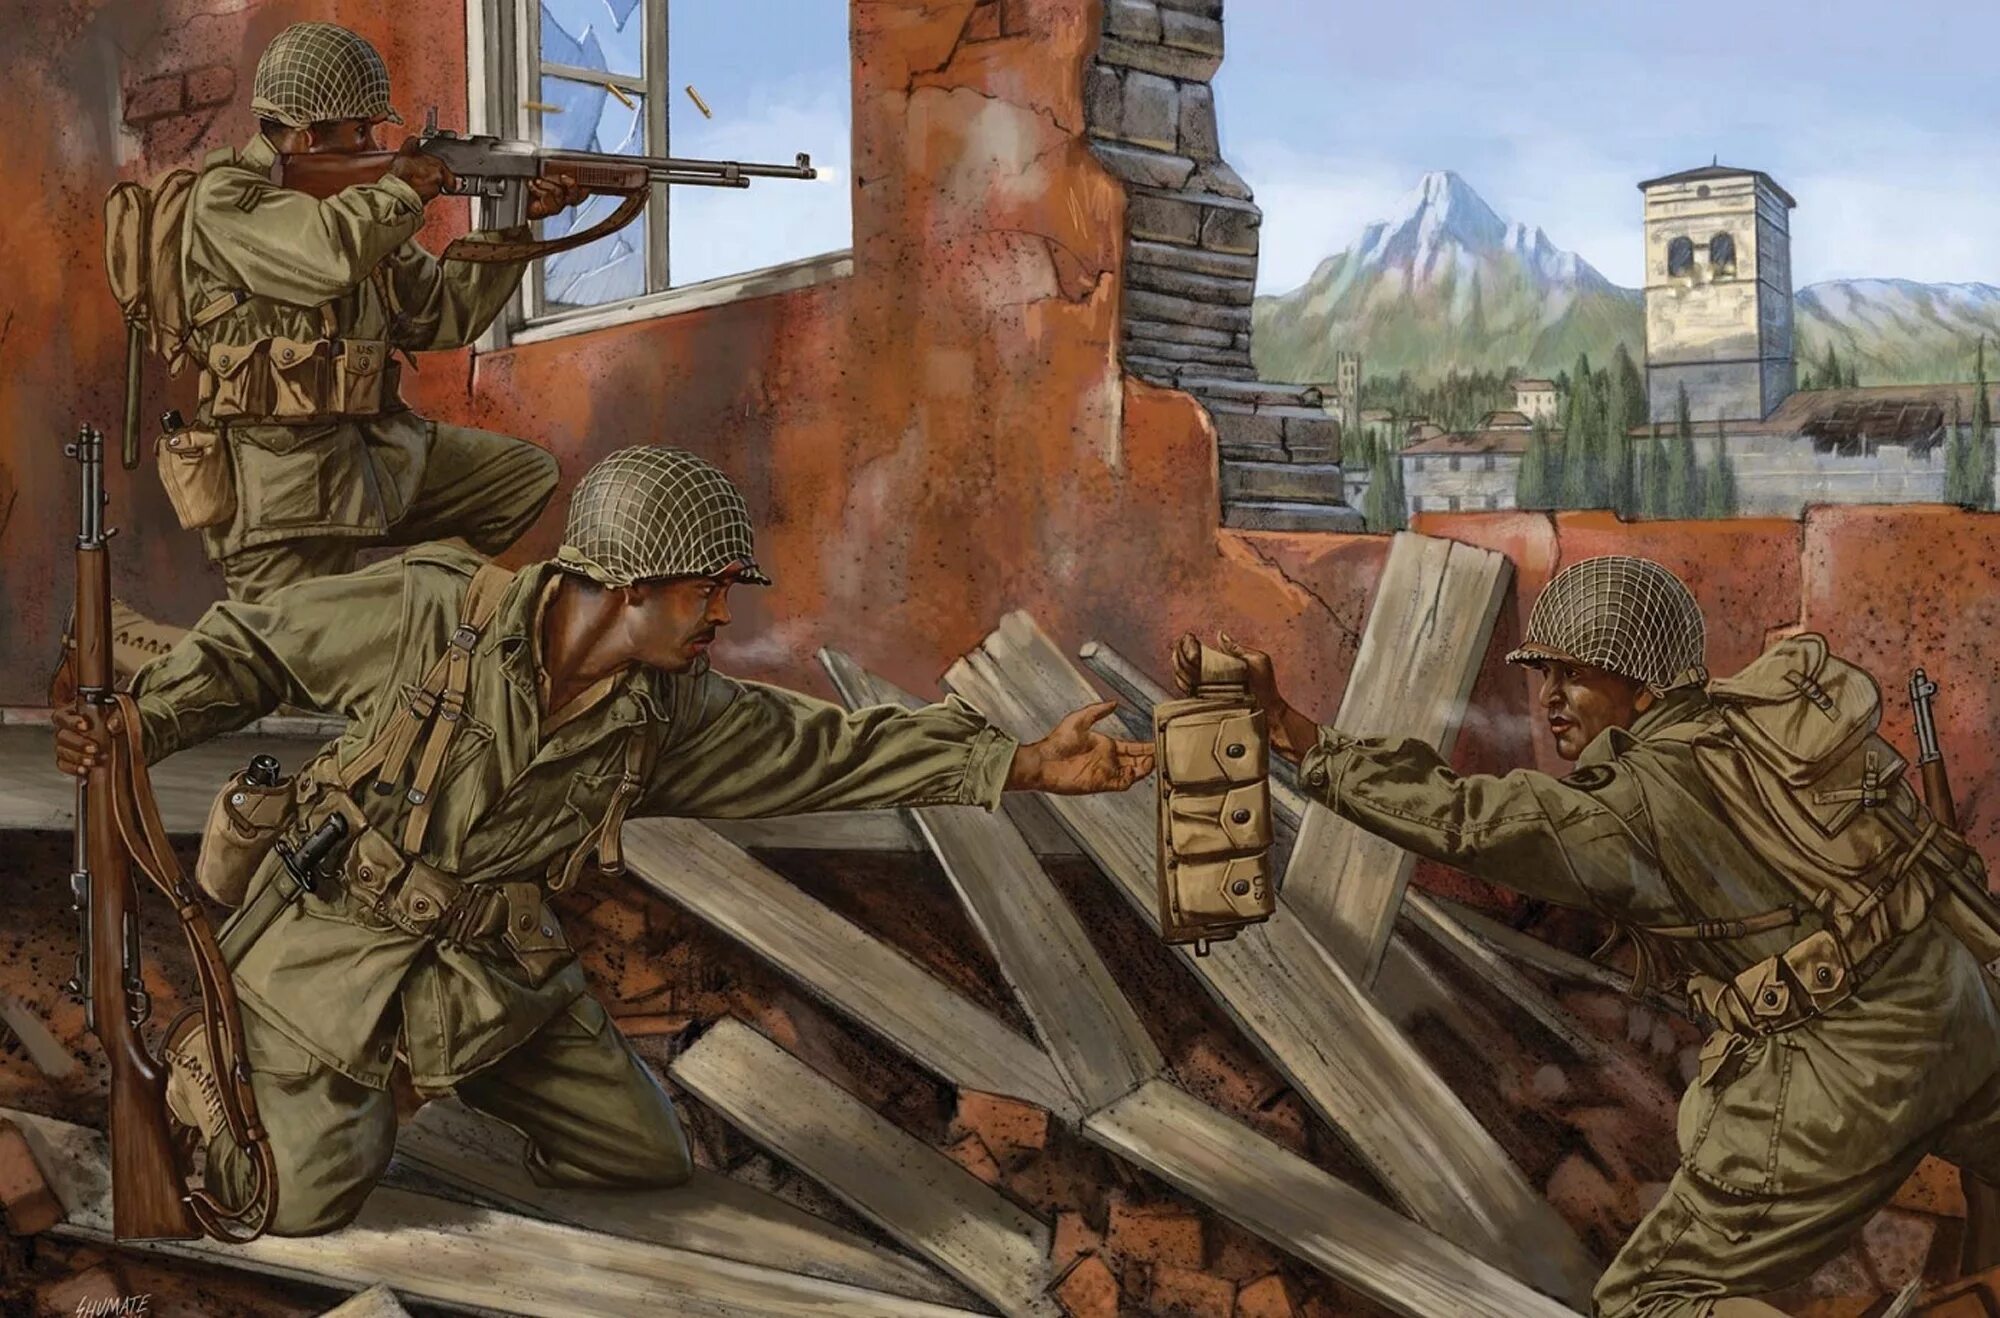 Военные картины великой отечественной войны. Johnny Shumate художник. Стюарт Браун военщина. Американский солдат ww2 арт.